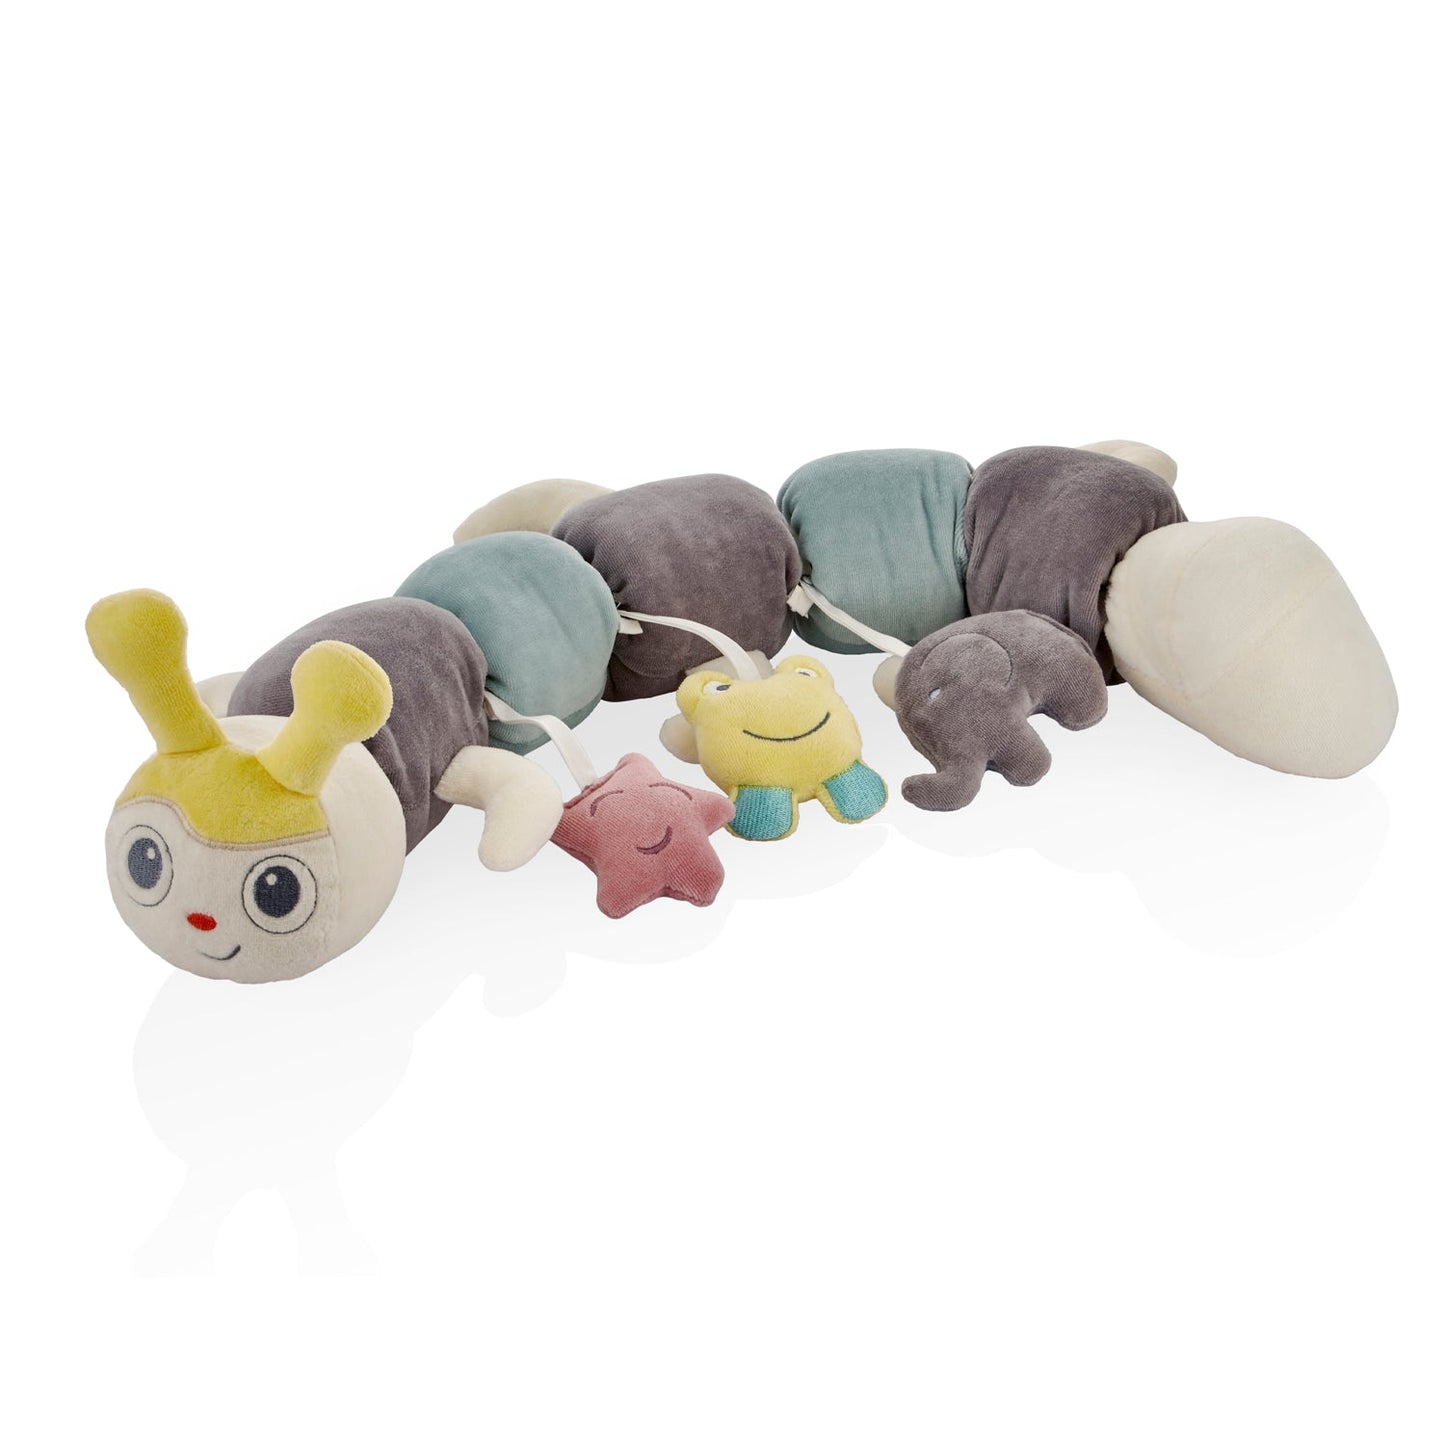 Babyjem - Catterpillar Pillow with Toys